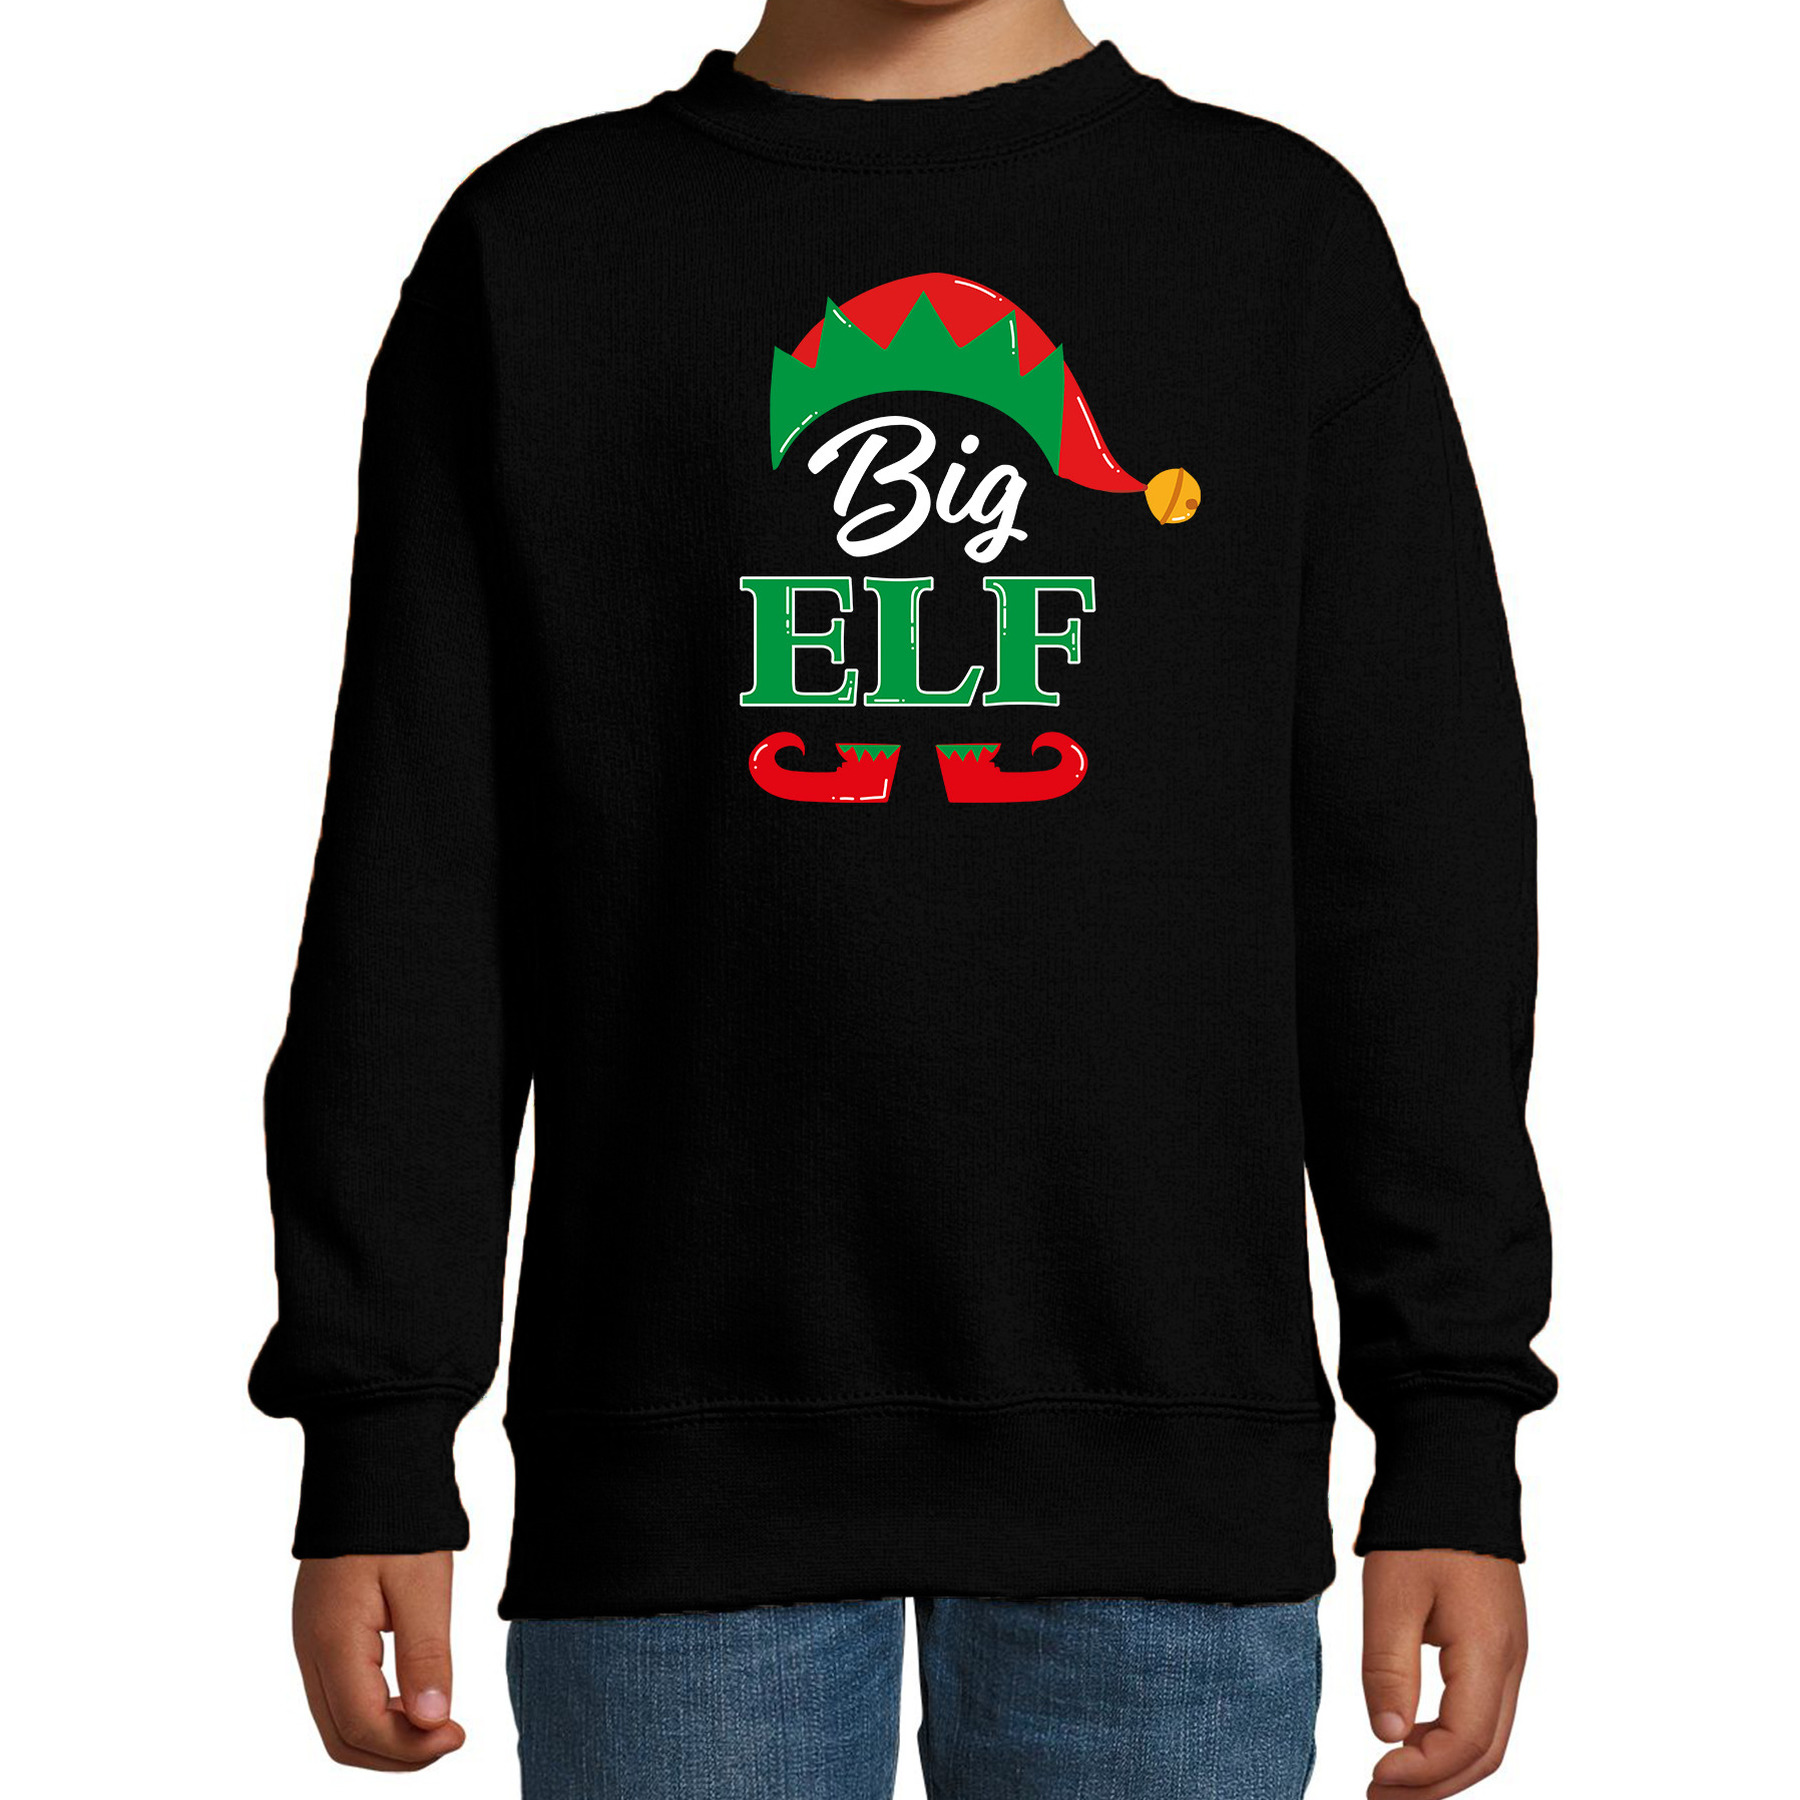 Big elf Kerstsweater-Kersttrui zwart voor kinderen